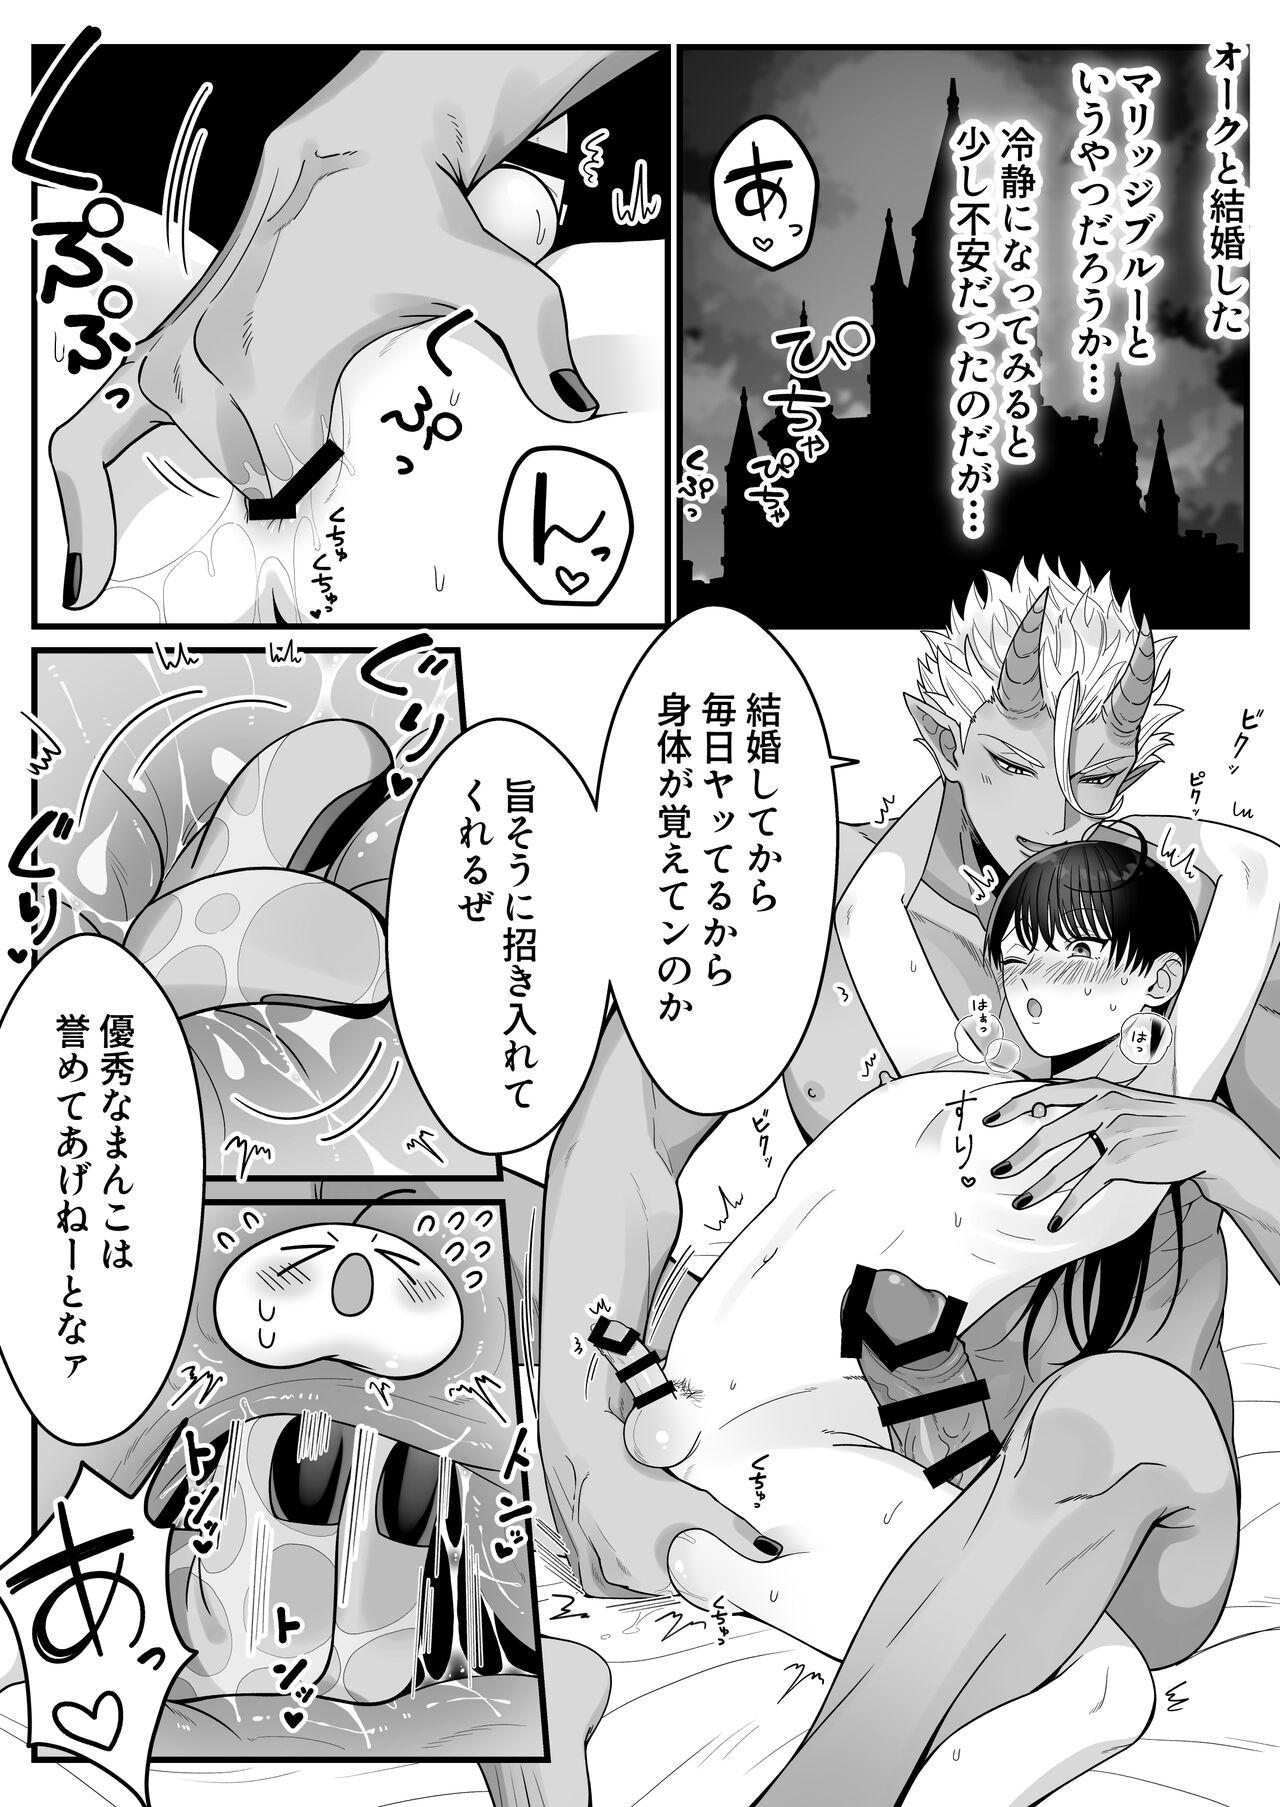 Bound Orc no naedoko ni ochitakedo aisa re sugite chou shiawasedesu! - Original Cream Pie - Page 6